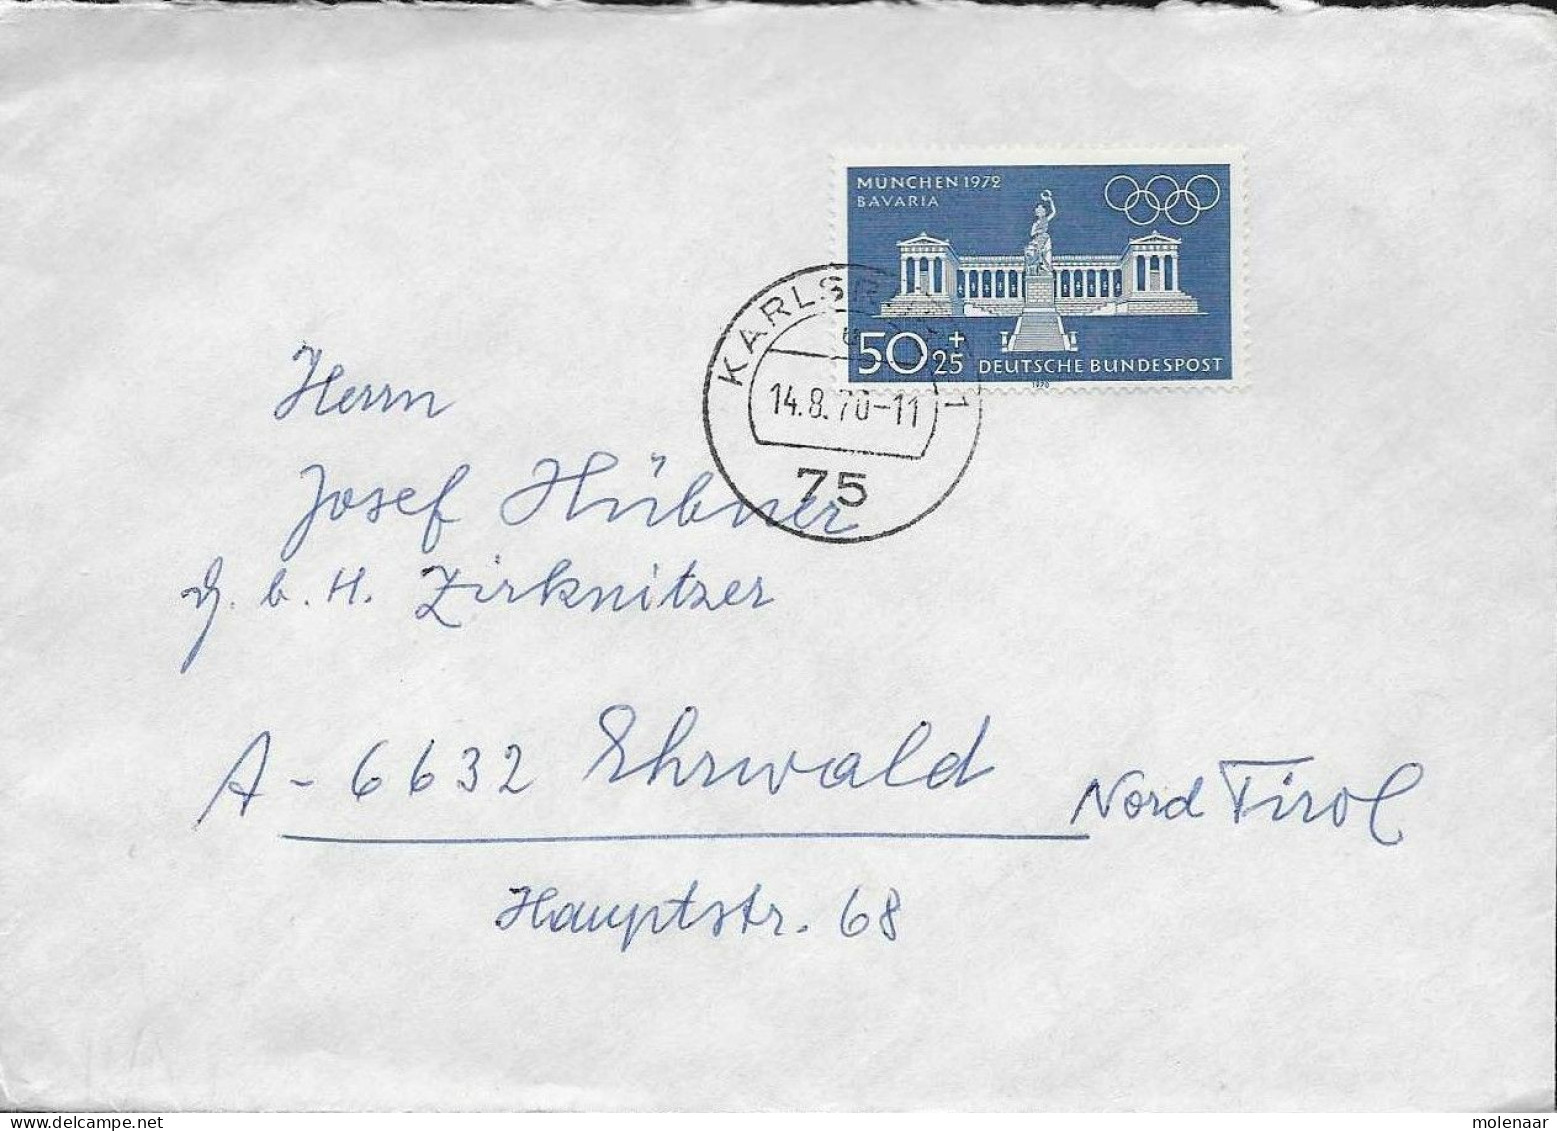 Postzegels > Europa > Duitsland > West-Duitsland > 1960-1969 > Brief Met No. 627 (17144) - Brieven En Documenten